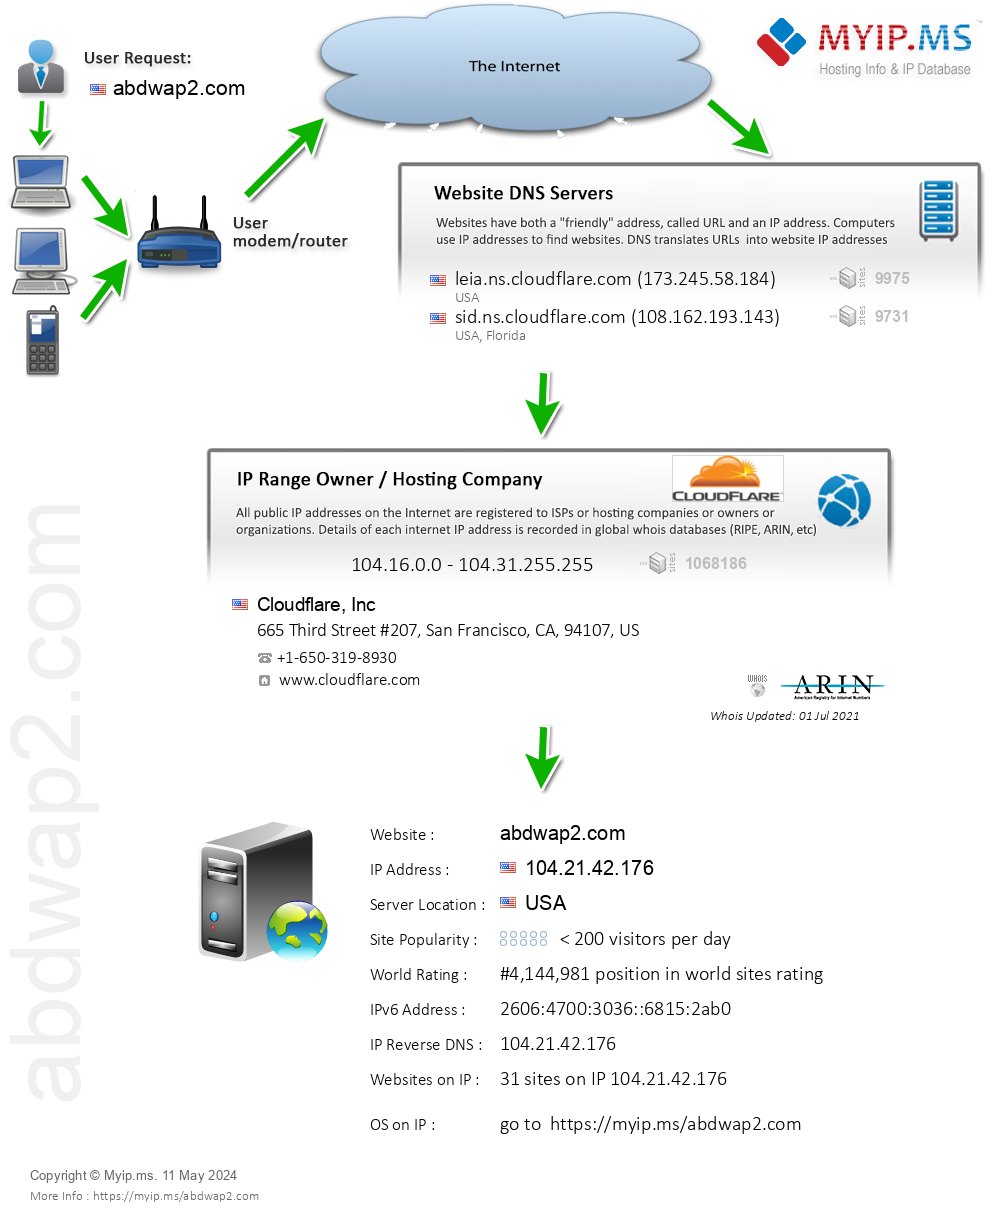 Abdwap2.com - Website Hosting Visual IP Diagram